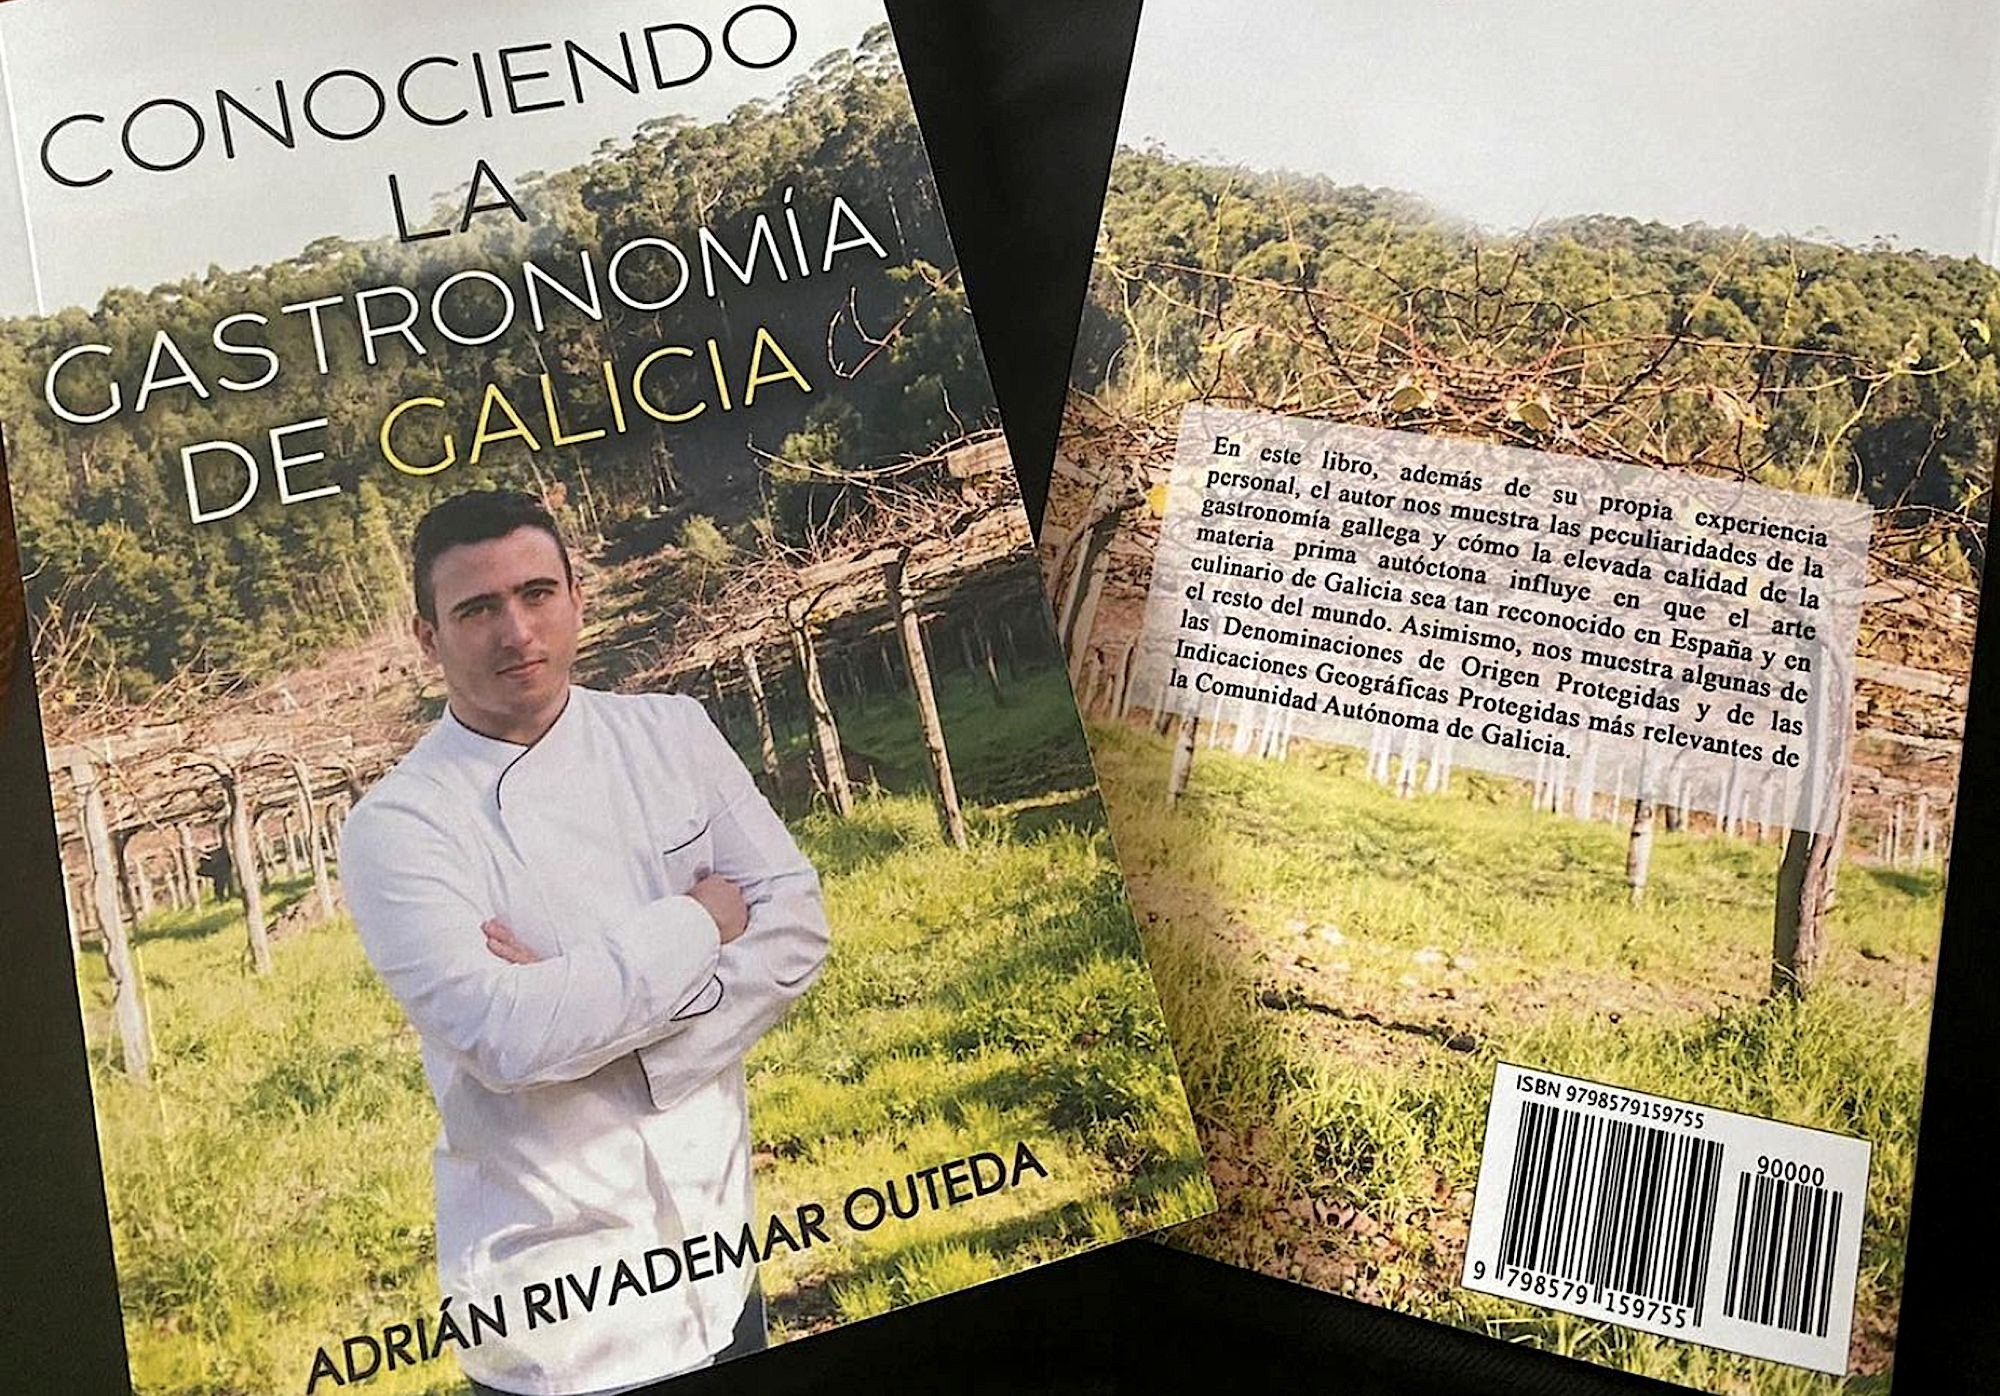 Conociendo la gastronomía de Galicia, de Adrián Rivademar.